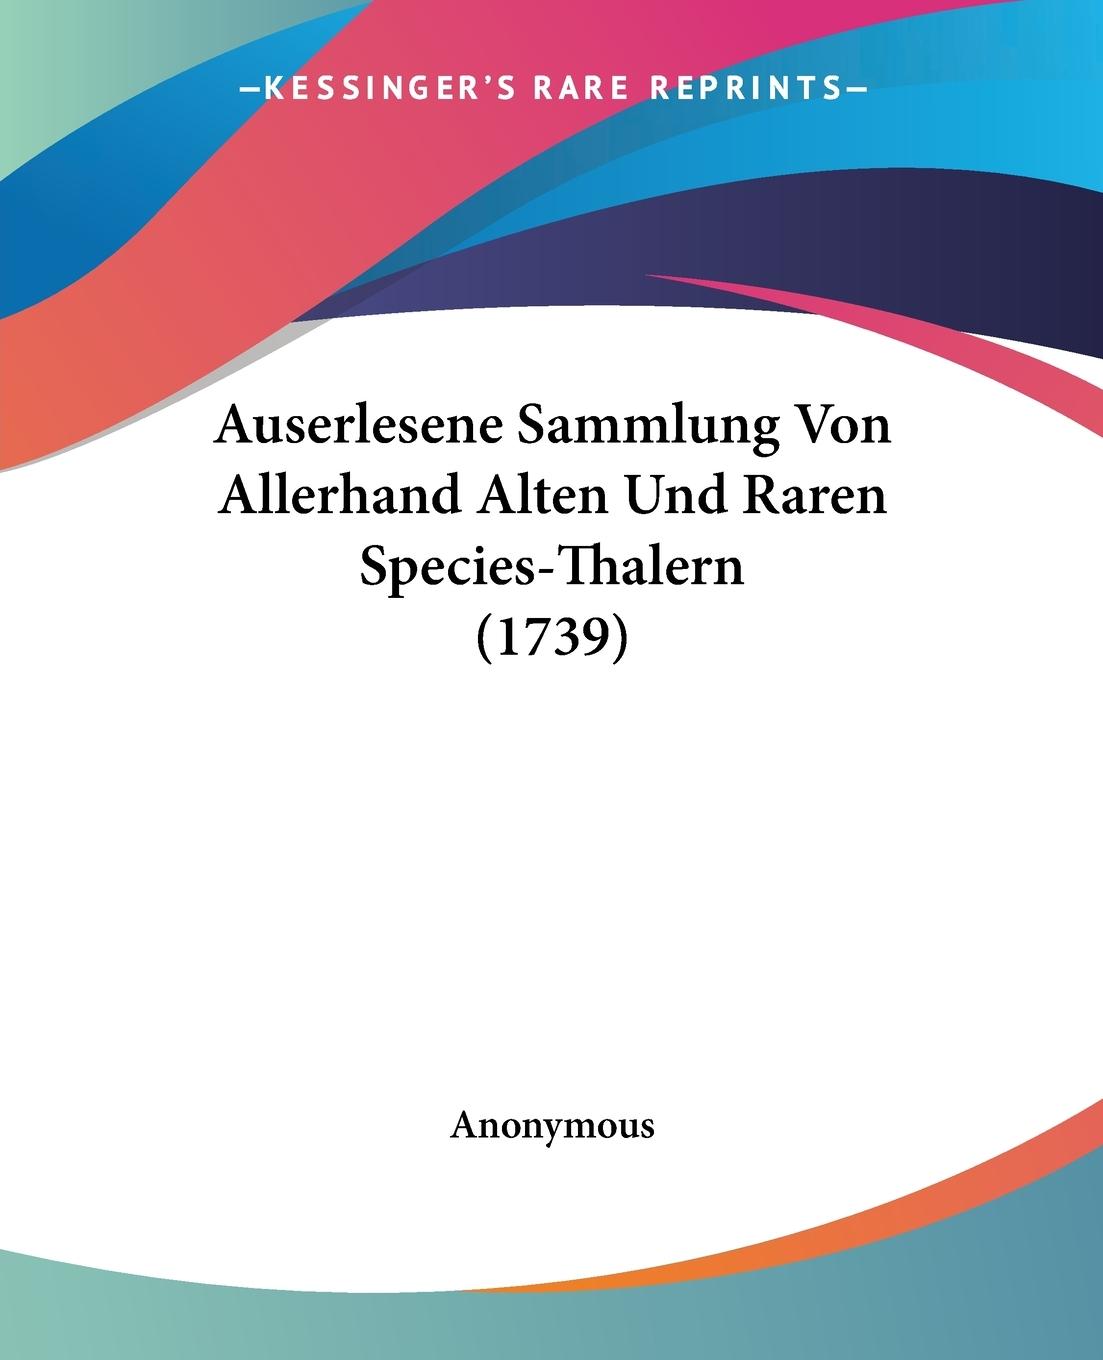 Auserlesene Sammlung Von Allerhand Alten Und Raren Species-Thalern (1739) - Anonymous